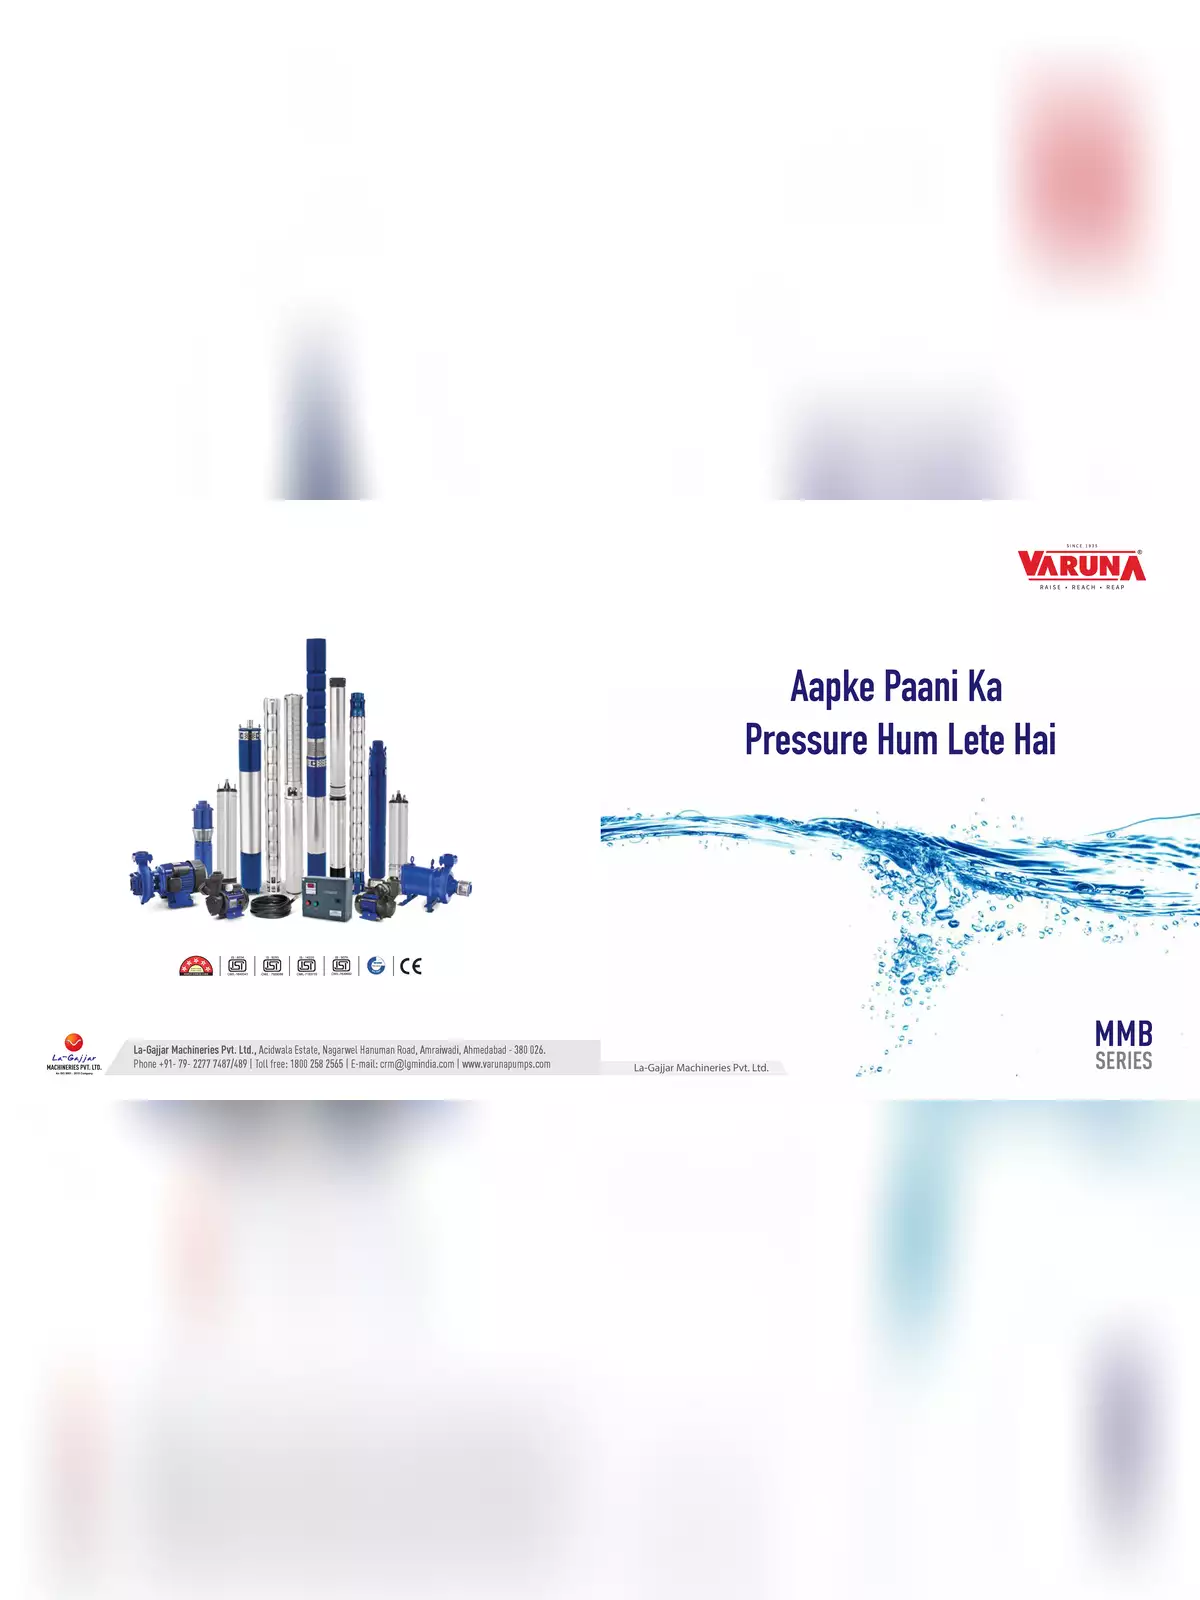 Varuna Pumps Products Brochure